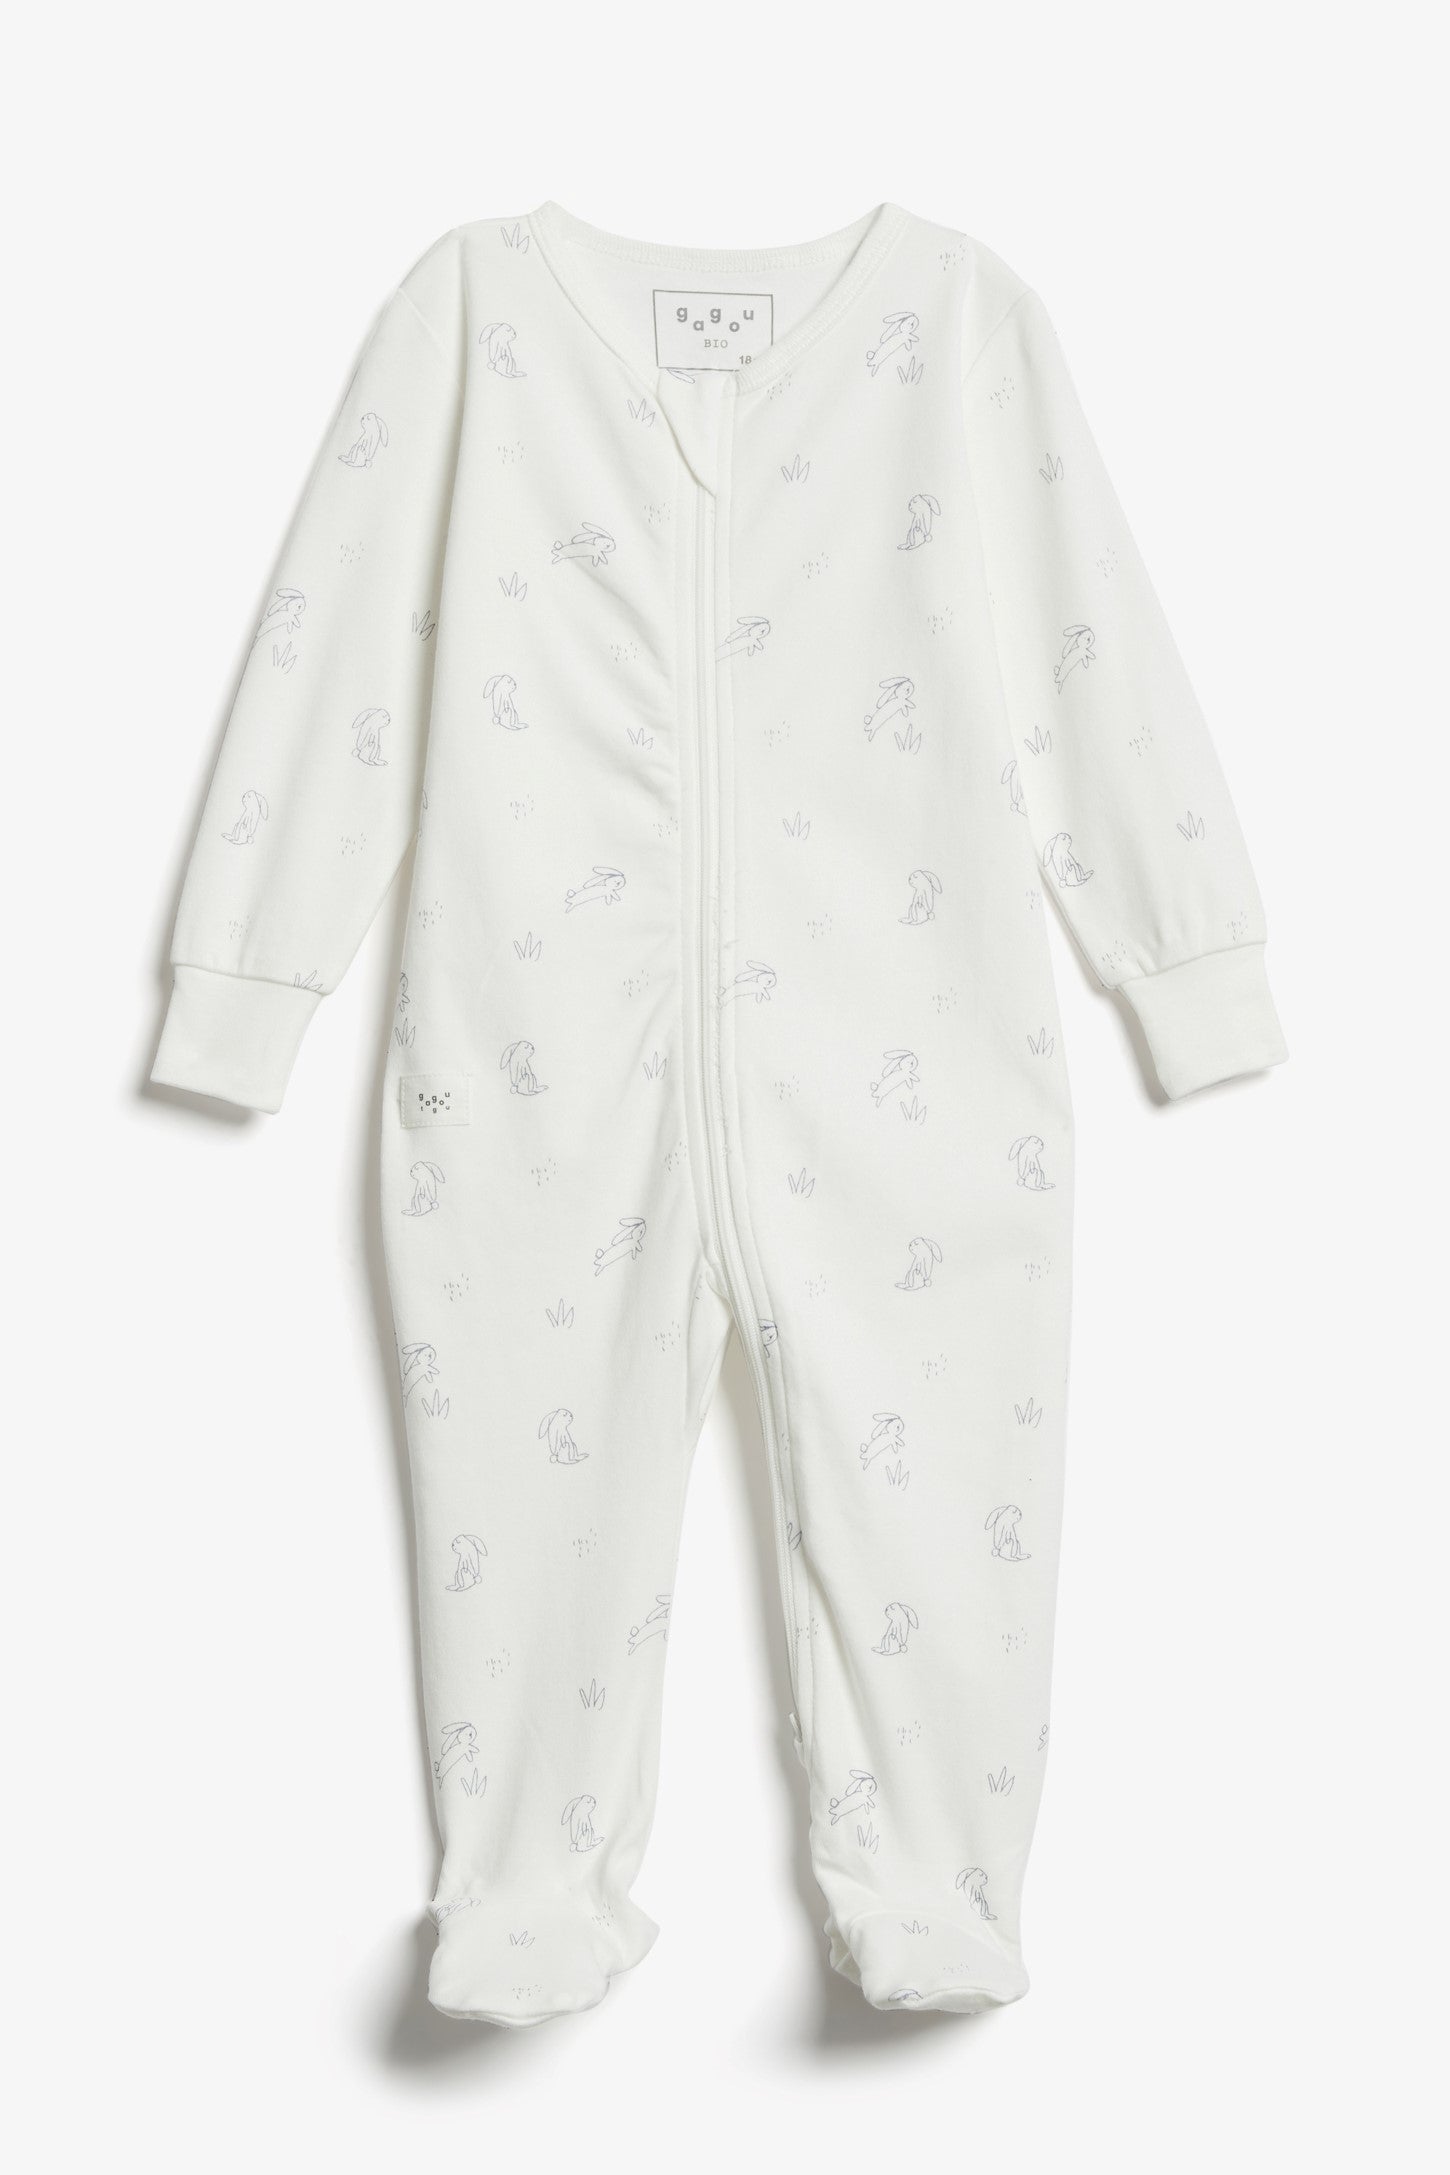 Pyjama 1-pièce imprimé, coton bio - Bébé && BLANC